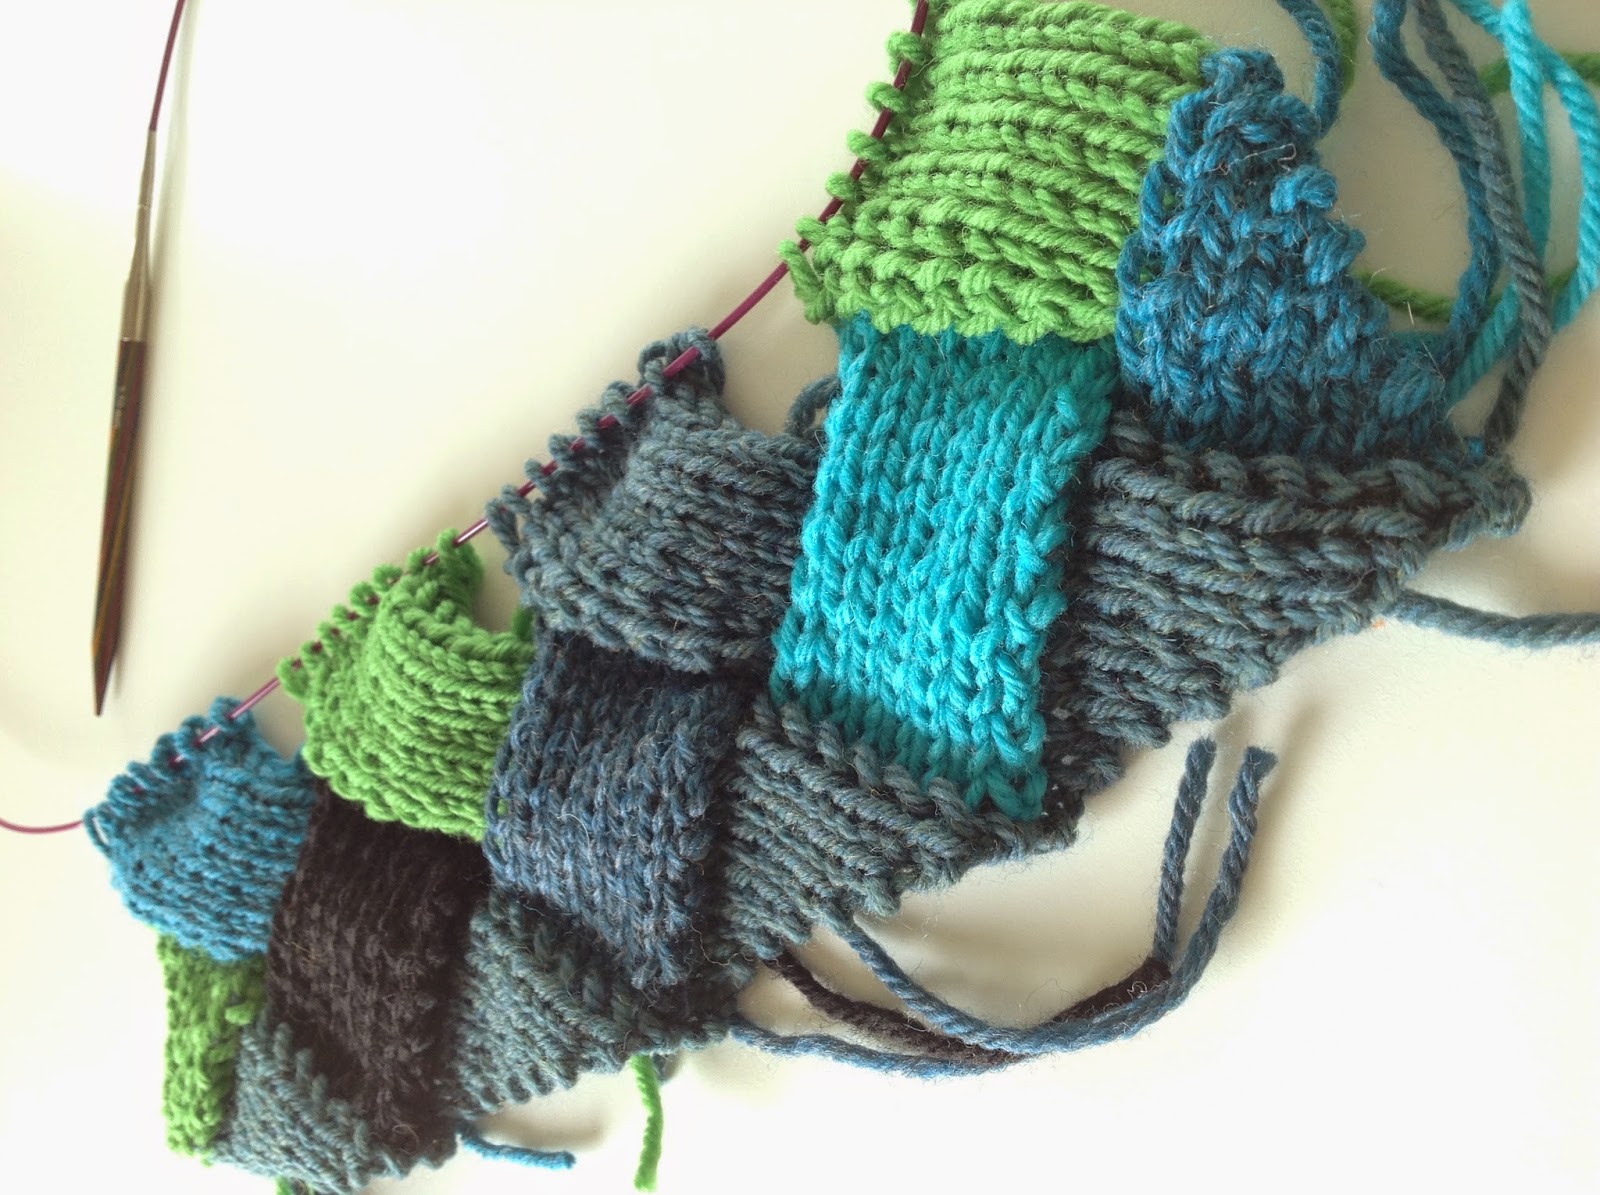 Knitting By Kaae: Lær strikke Neverkont eller Entrelac som det også kaldes (Brush på mit Neverkont